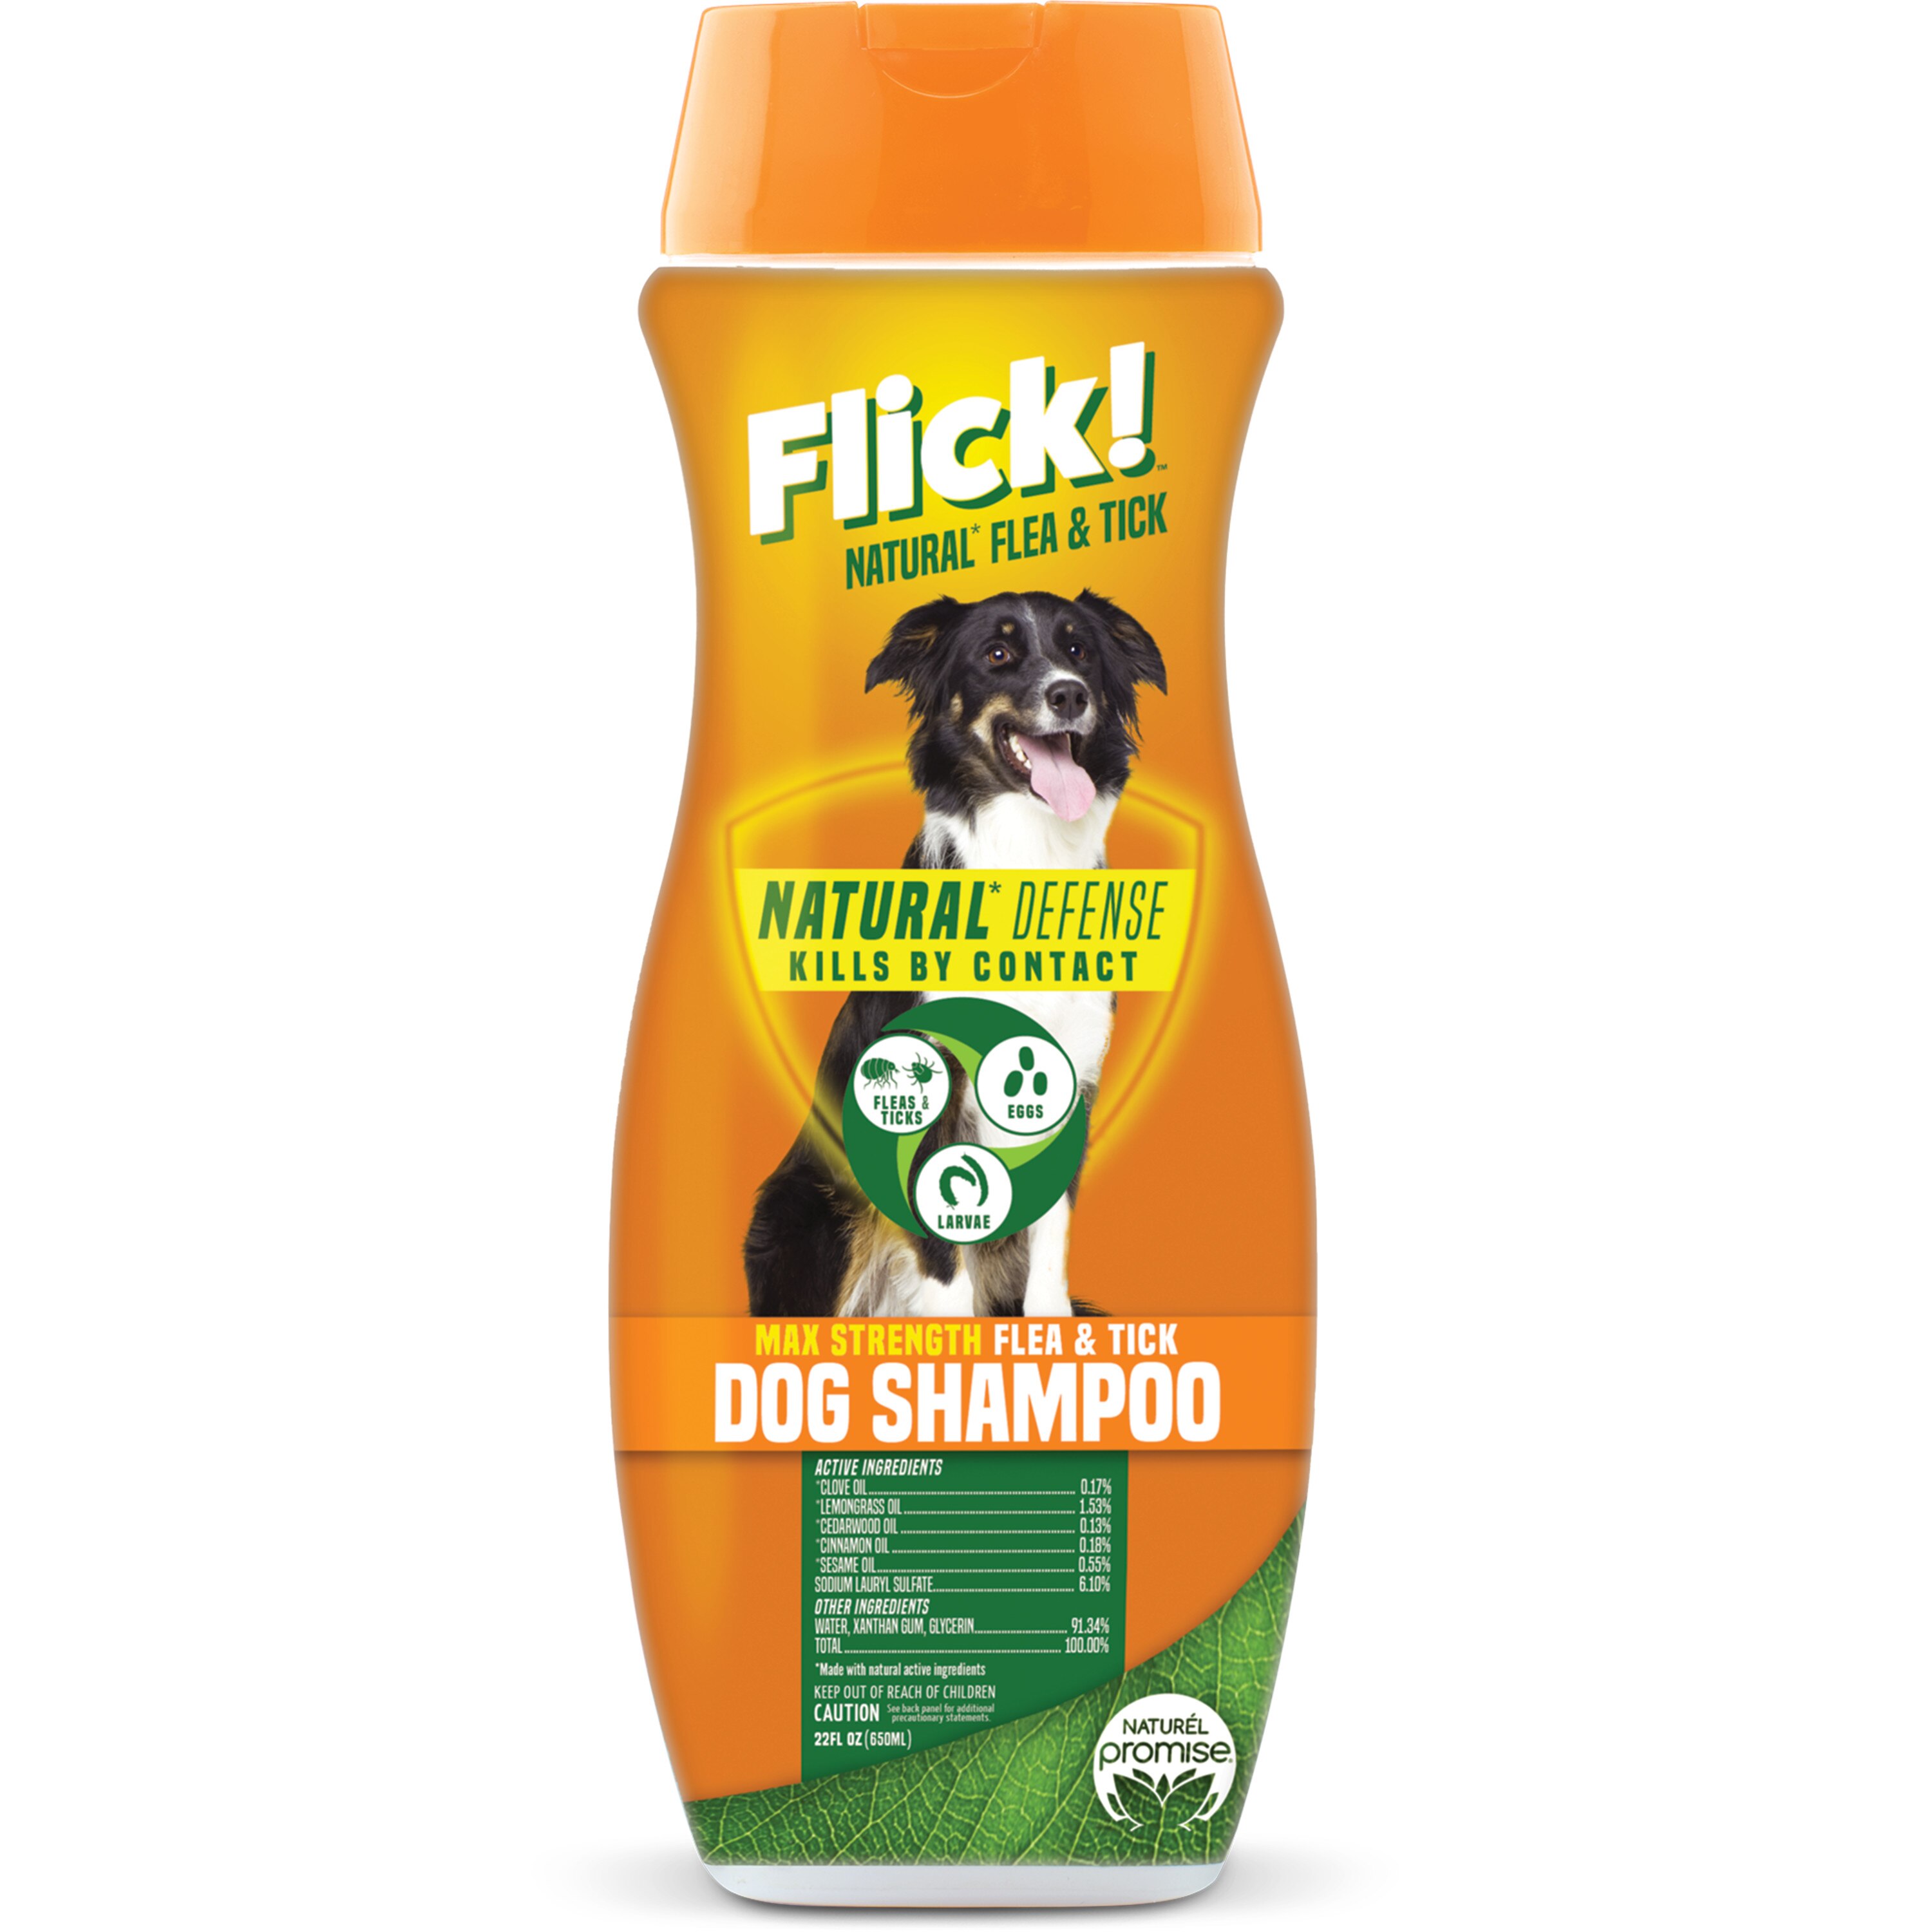 Flick! Natural Flea & Tick Max Strength Dog Shampoo, 22 oz